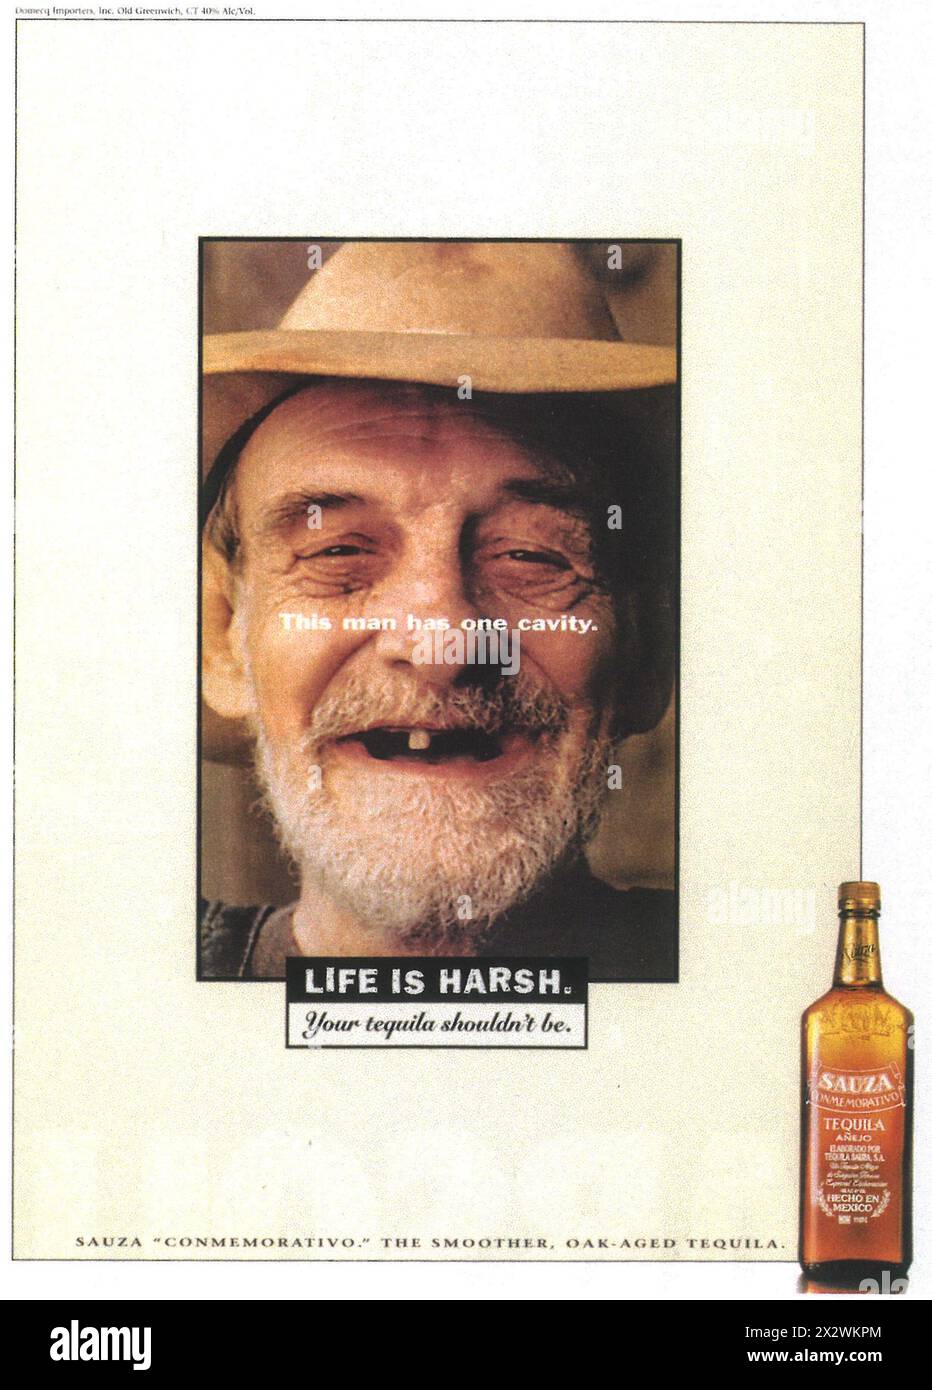 1995 Sauza Tequila ad - "quest'uomo ha una cavità... la vita è dura" Foto Stock